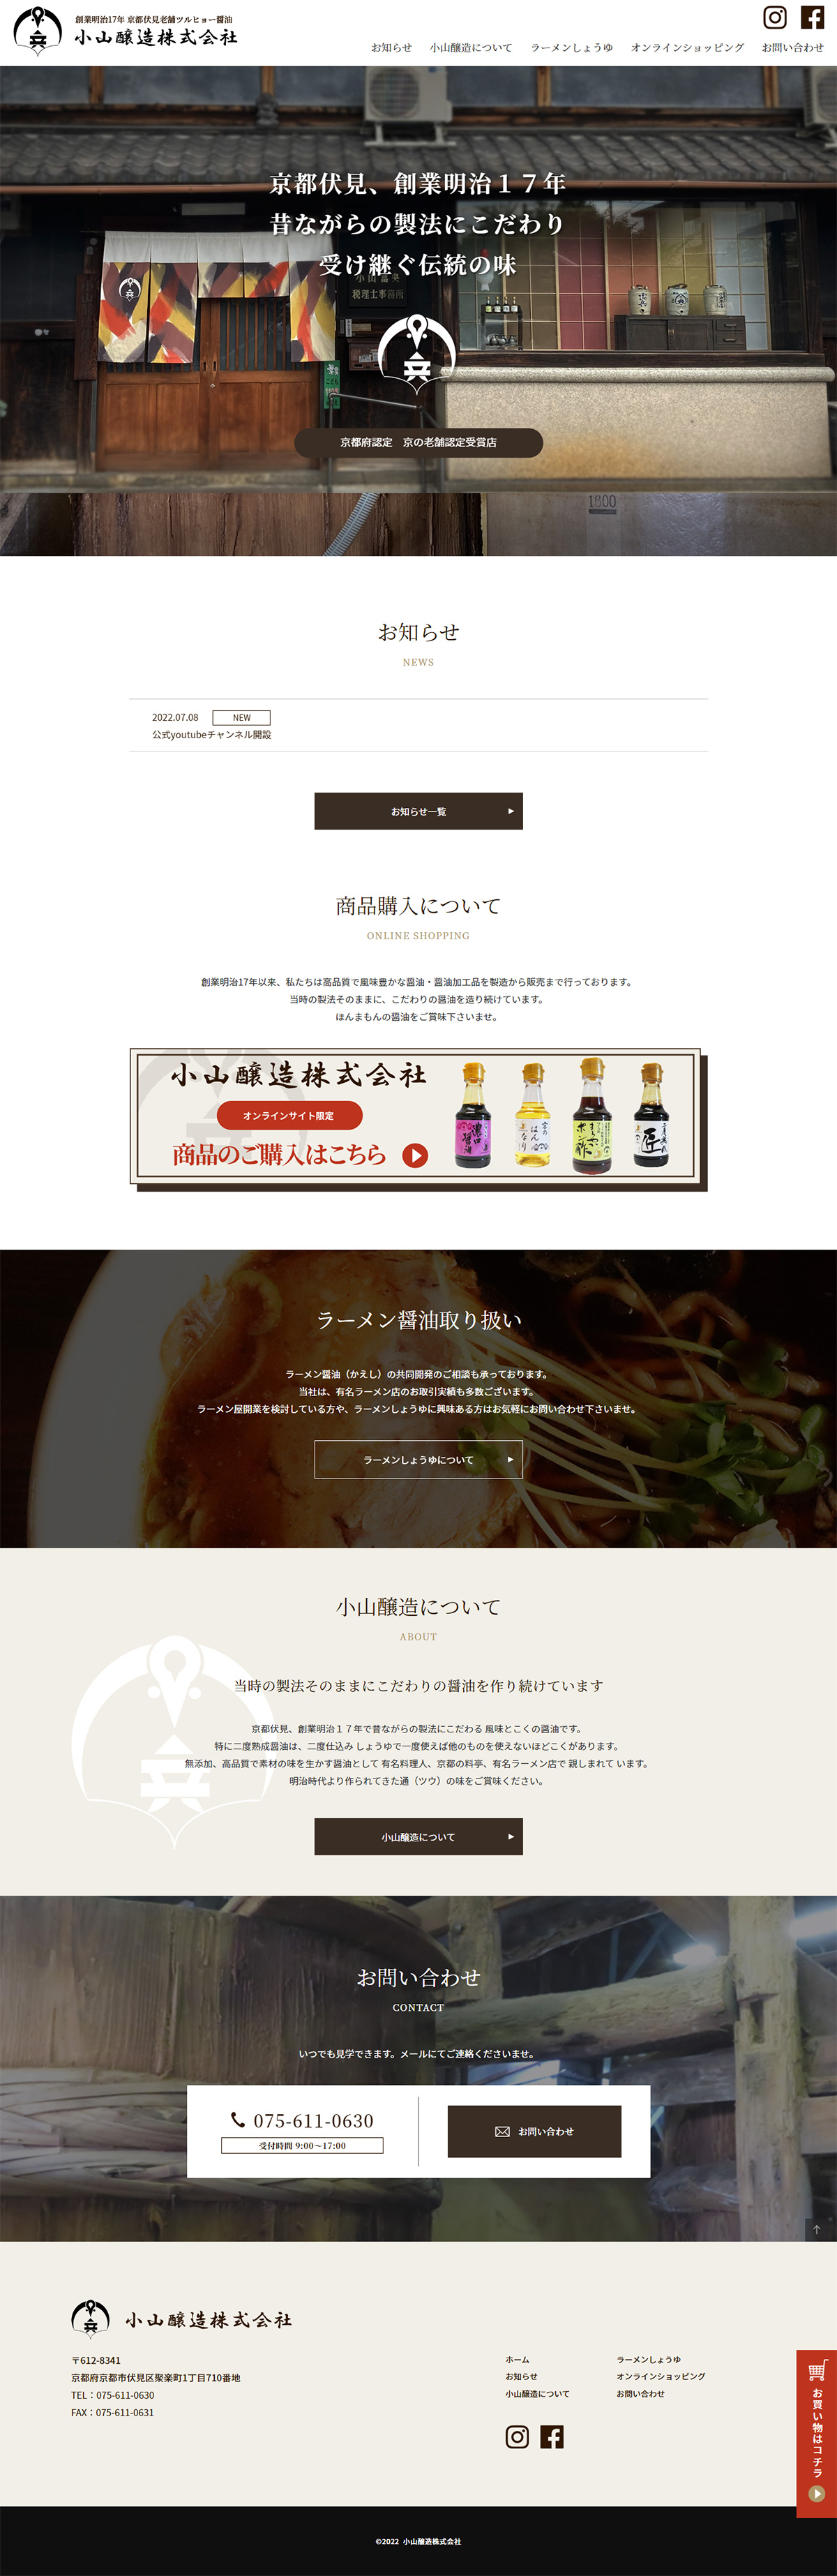 小山醸造株式会社様サイト